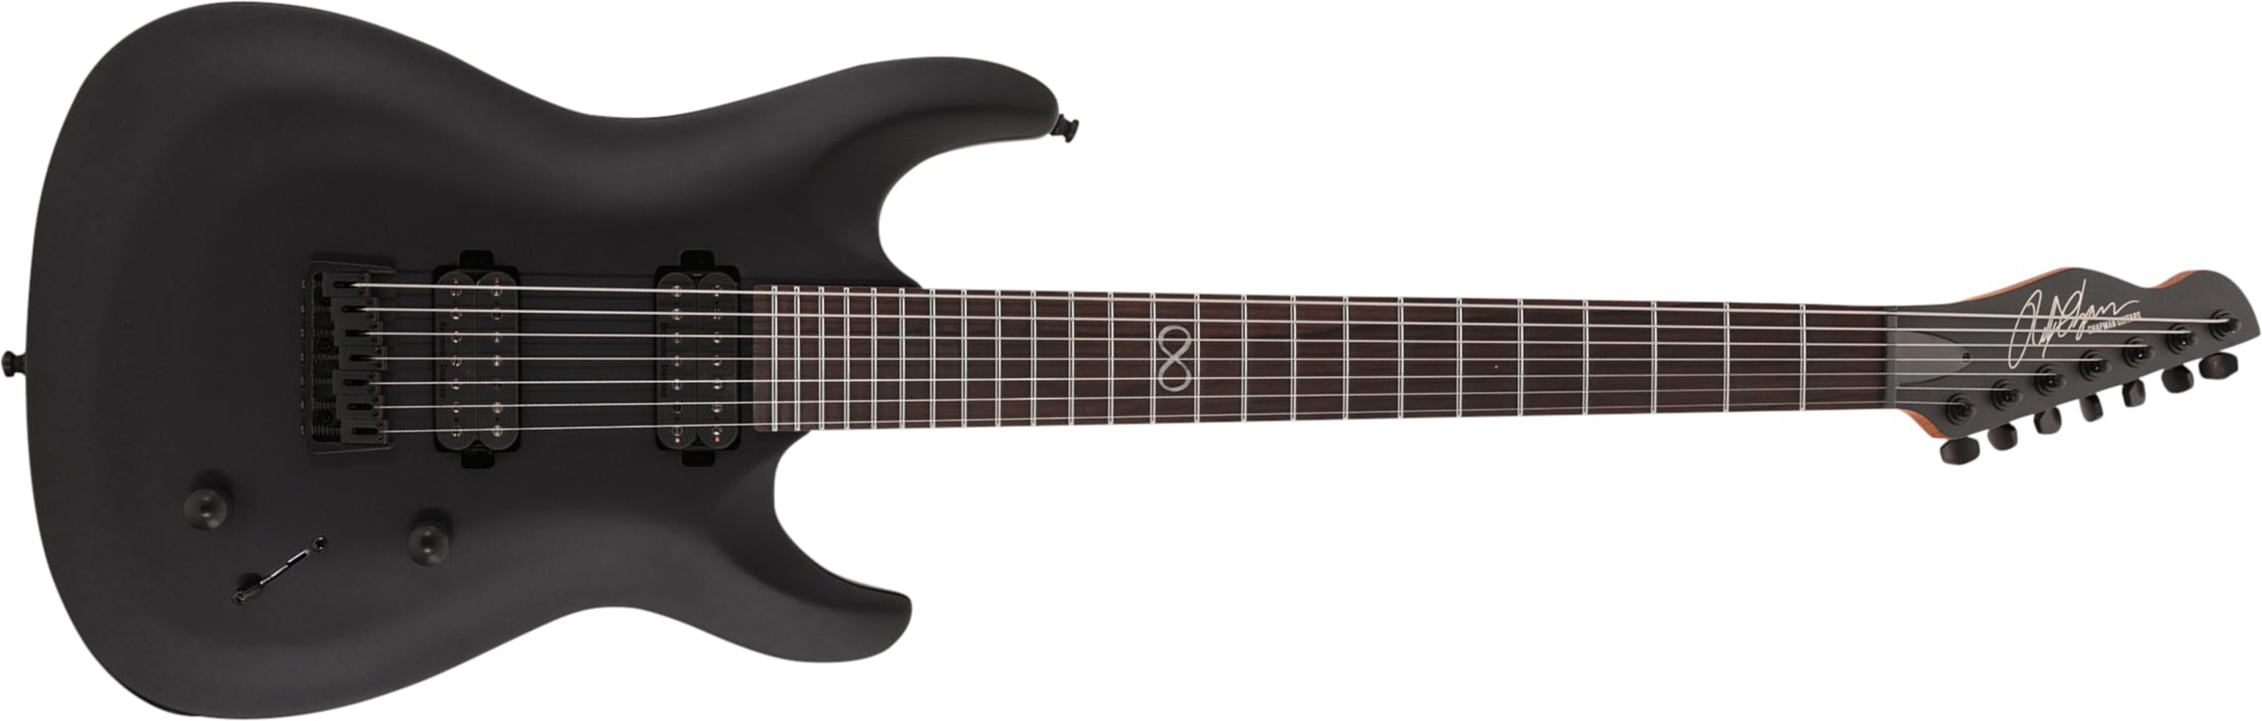 Chapman Guitars Ml1-7 Modern Pro 7c 2h Seymour Duncan  Ht Eb - Cyber Black - Guitare Électrique 7 Cordes - Main picture